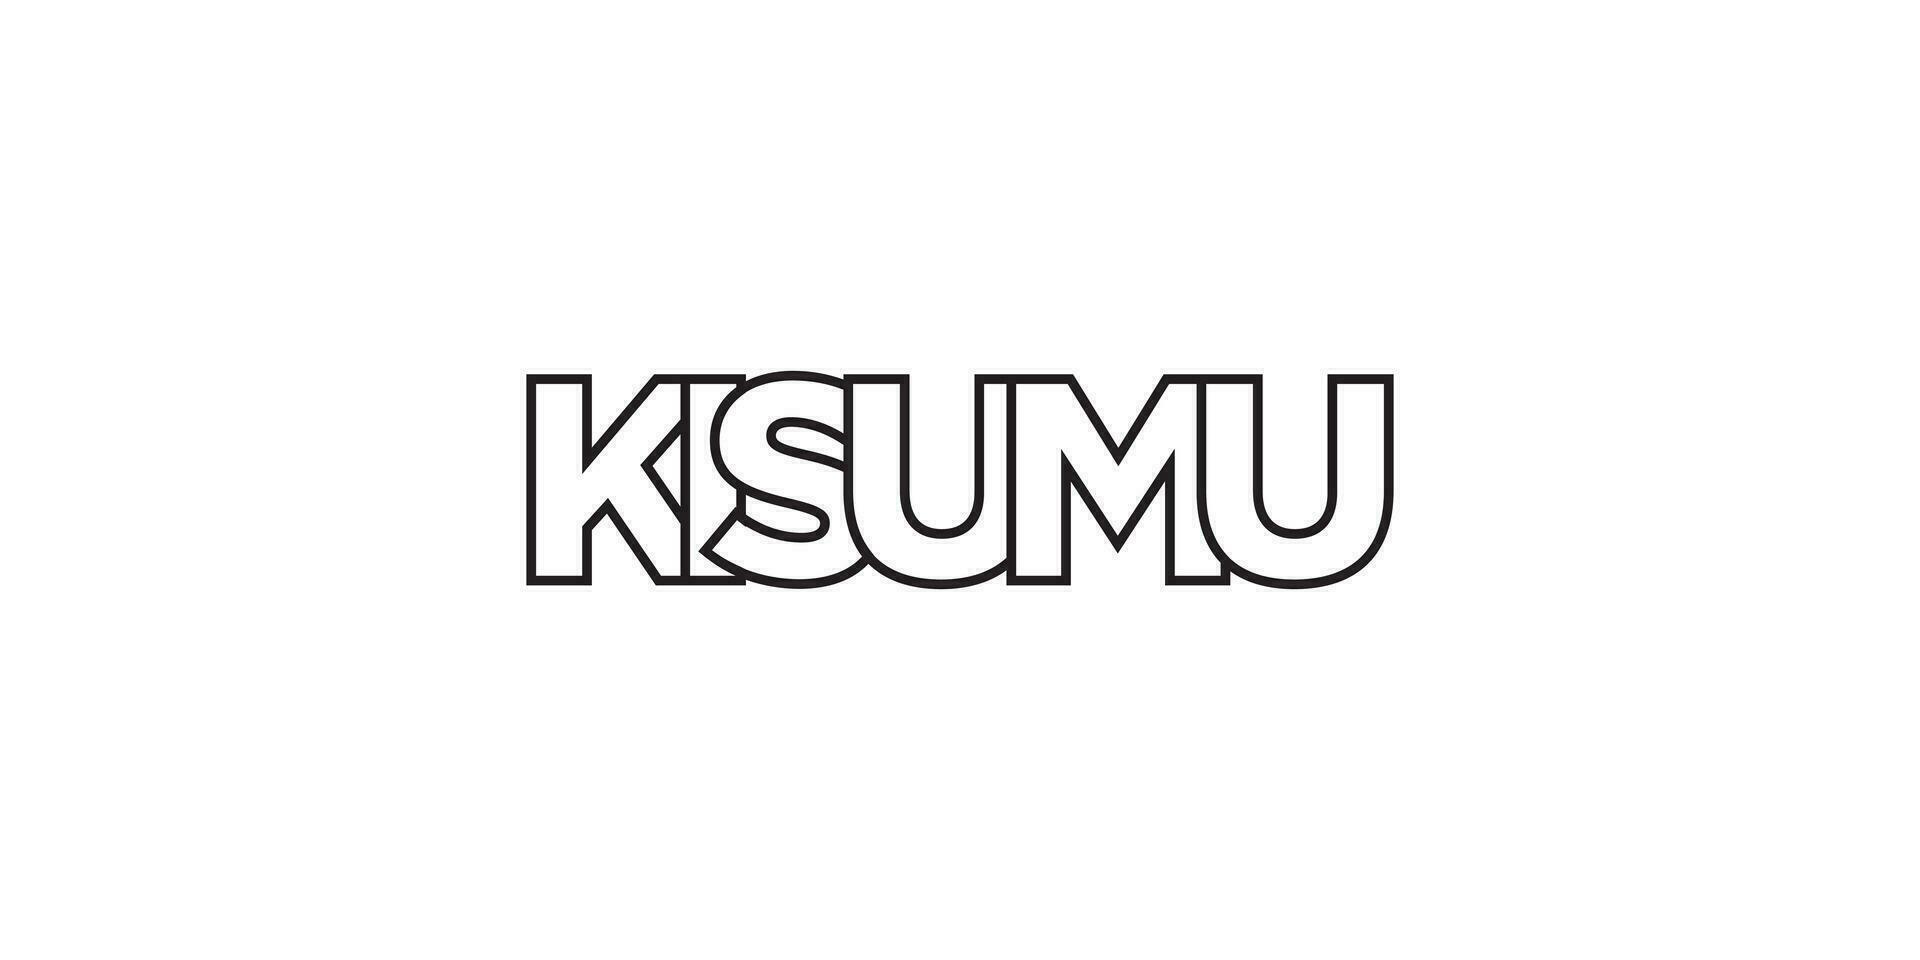 kisumu i de kenya emblem. de design funktioner en geometrisk stil, vektor illustration med djärv typografi i en modern font. de grafisk slogan text.